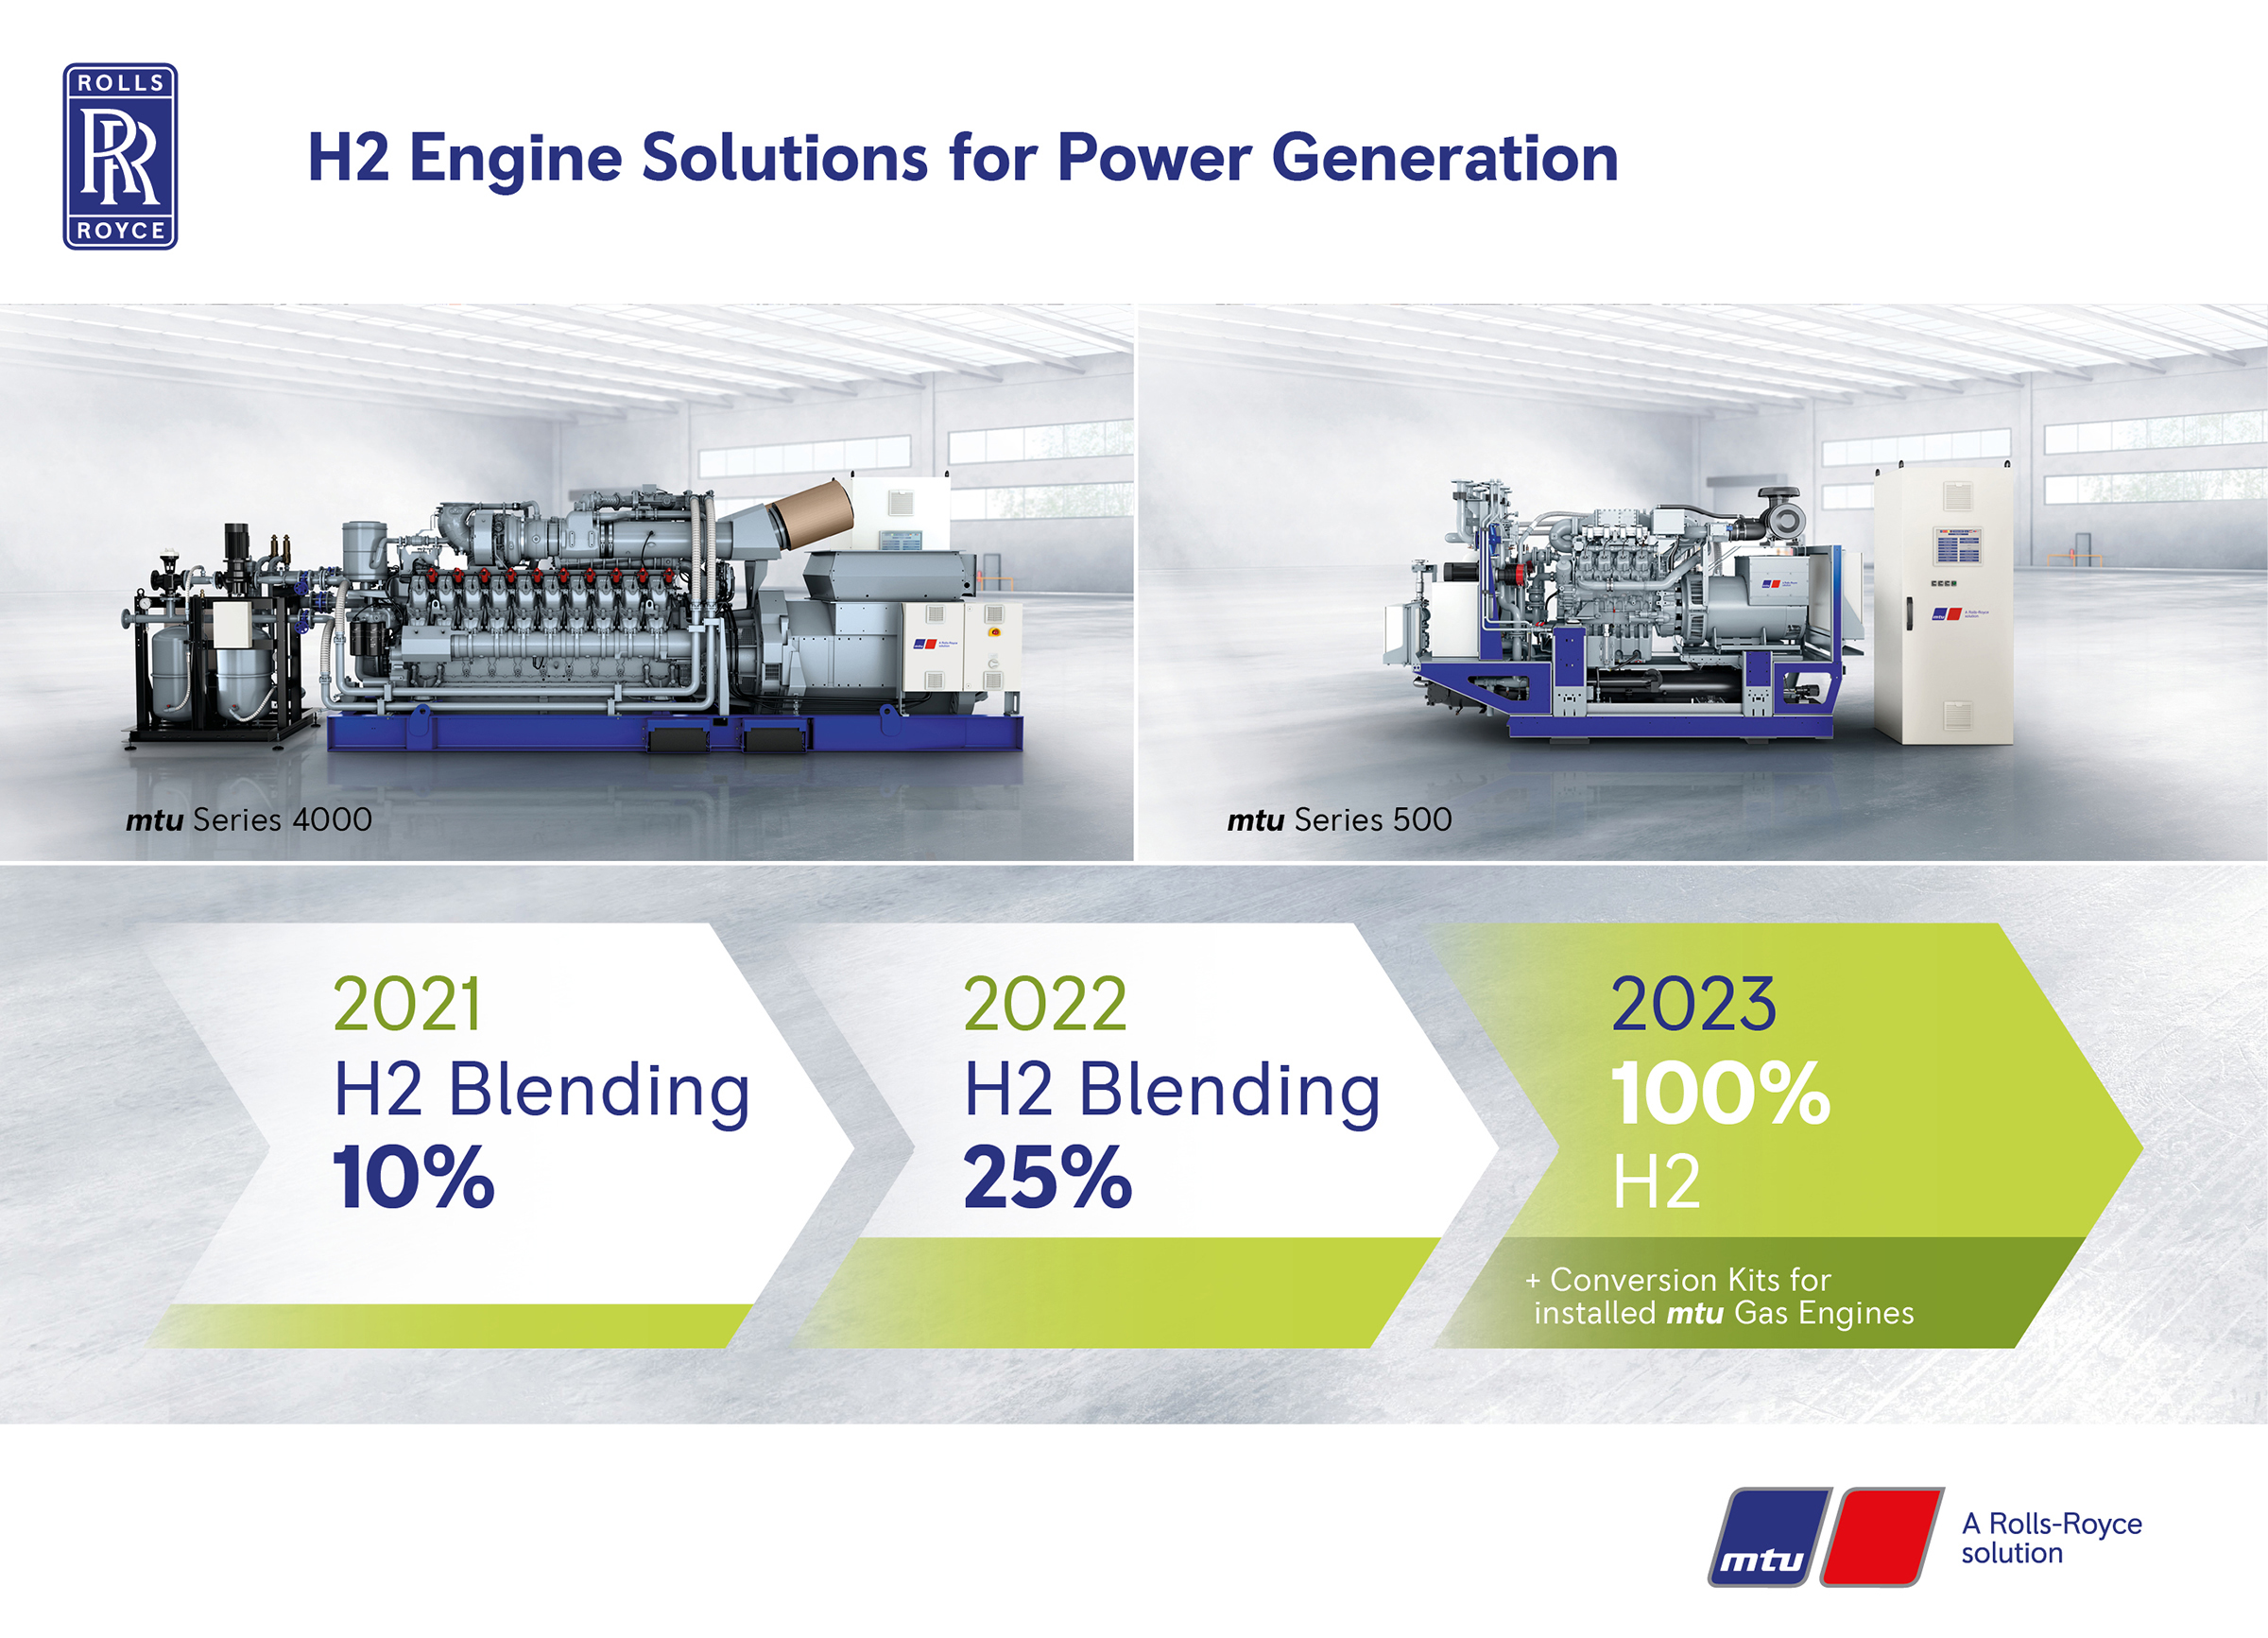 Rolls-Royce, enerji üretimi için mtu hidrojen çözümlerini piyasaya sürüyor